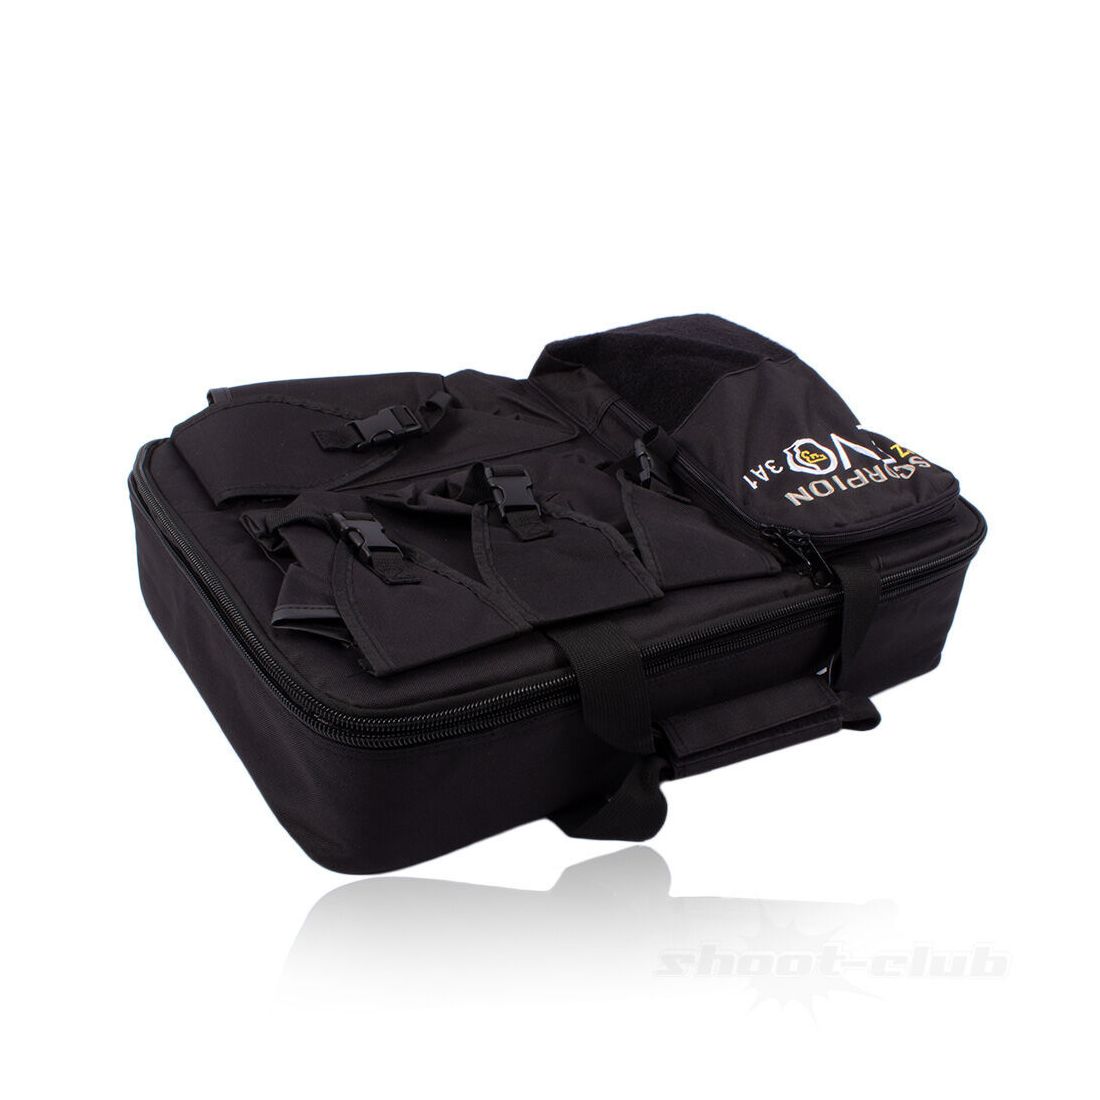 ASG CZ Scorpion Evo 3 A1 SMG Bag Waffentasche mit Waffentasche mit Schaumeinlage